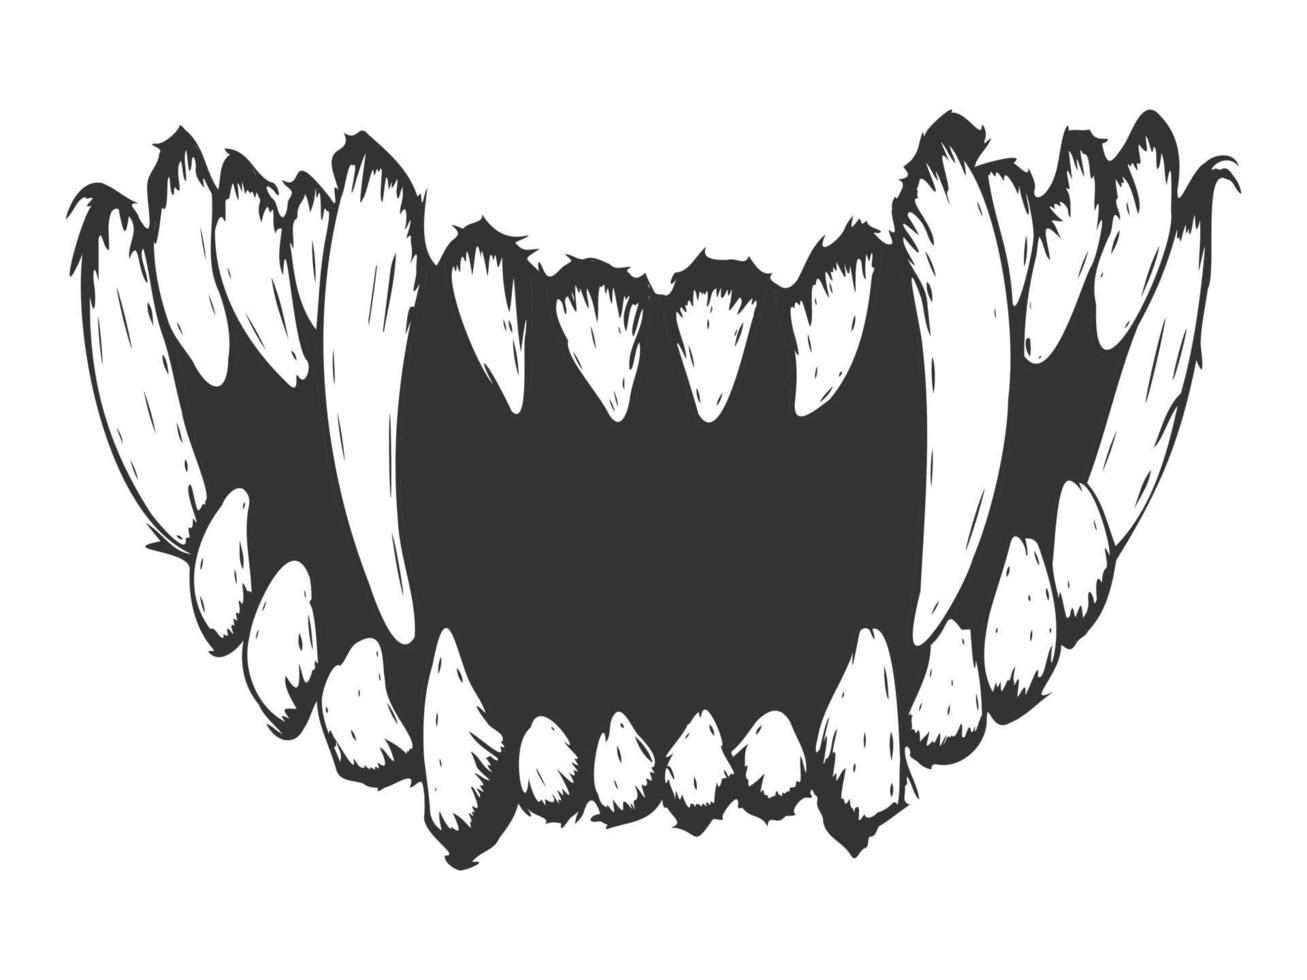 Zähne in einem Grinsen. Fang. Vektor-Illustration. isoliert auf weißem, monochromem, schwarz-weißem Druck. vektor